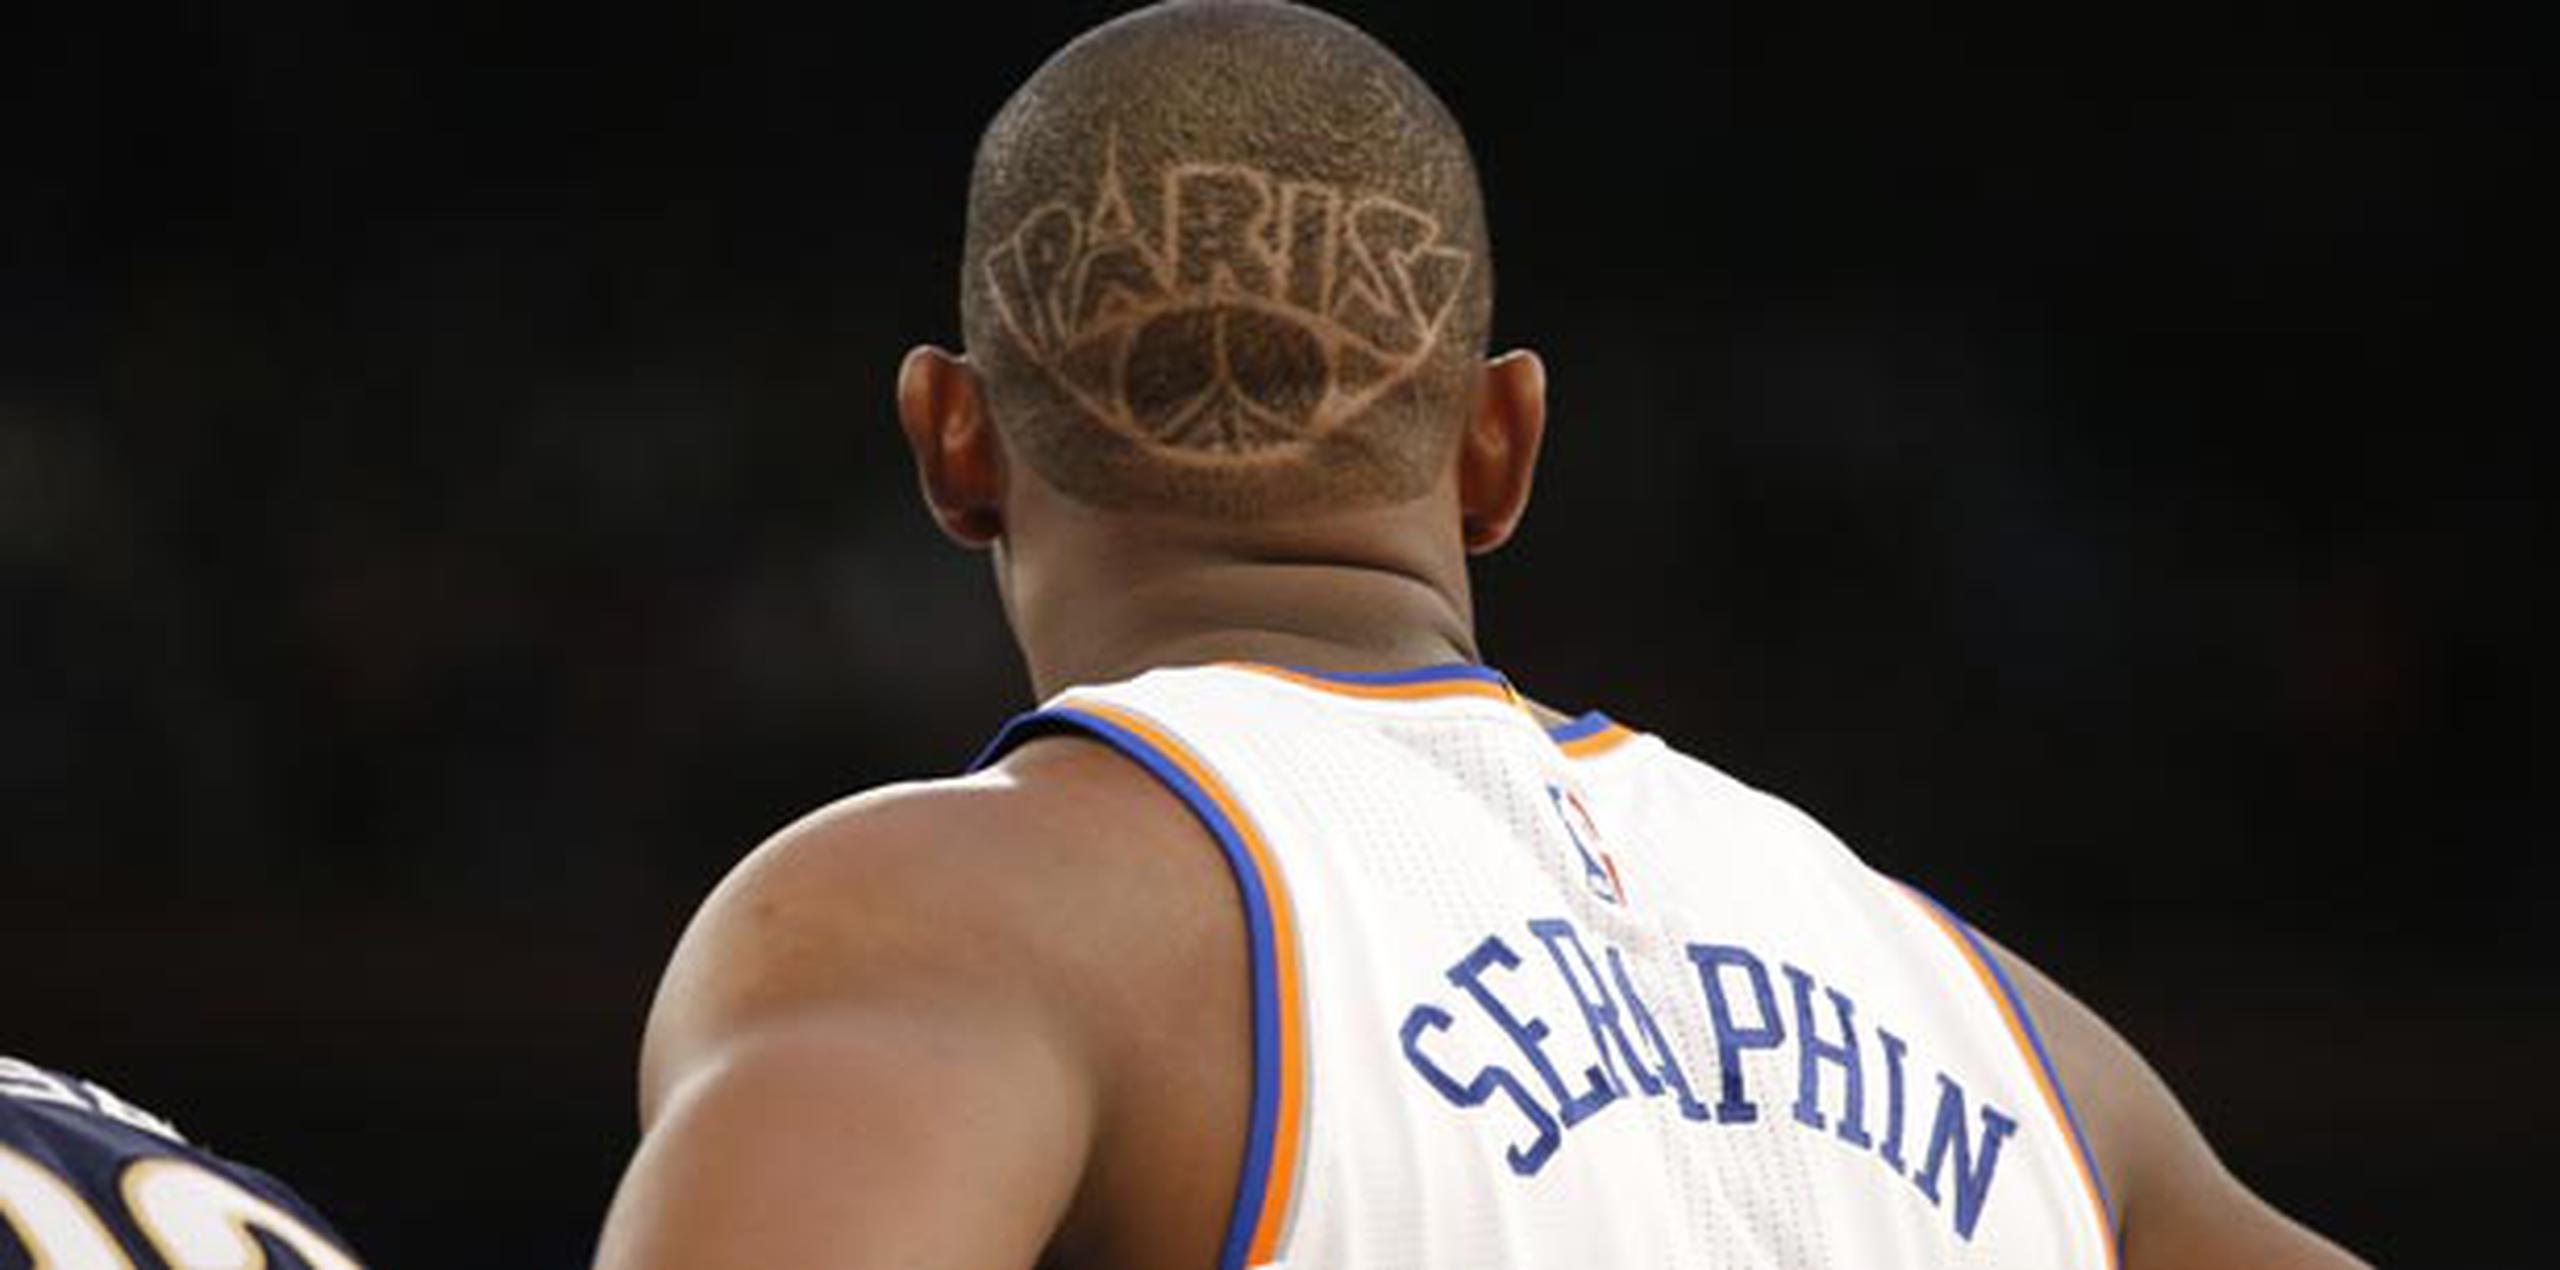 El jugador francés Kevin Seraphin se afeitó "PARÍS" en el cabello como gesto simbólico por los ataques terroristas en Francia. (AP)